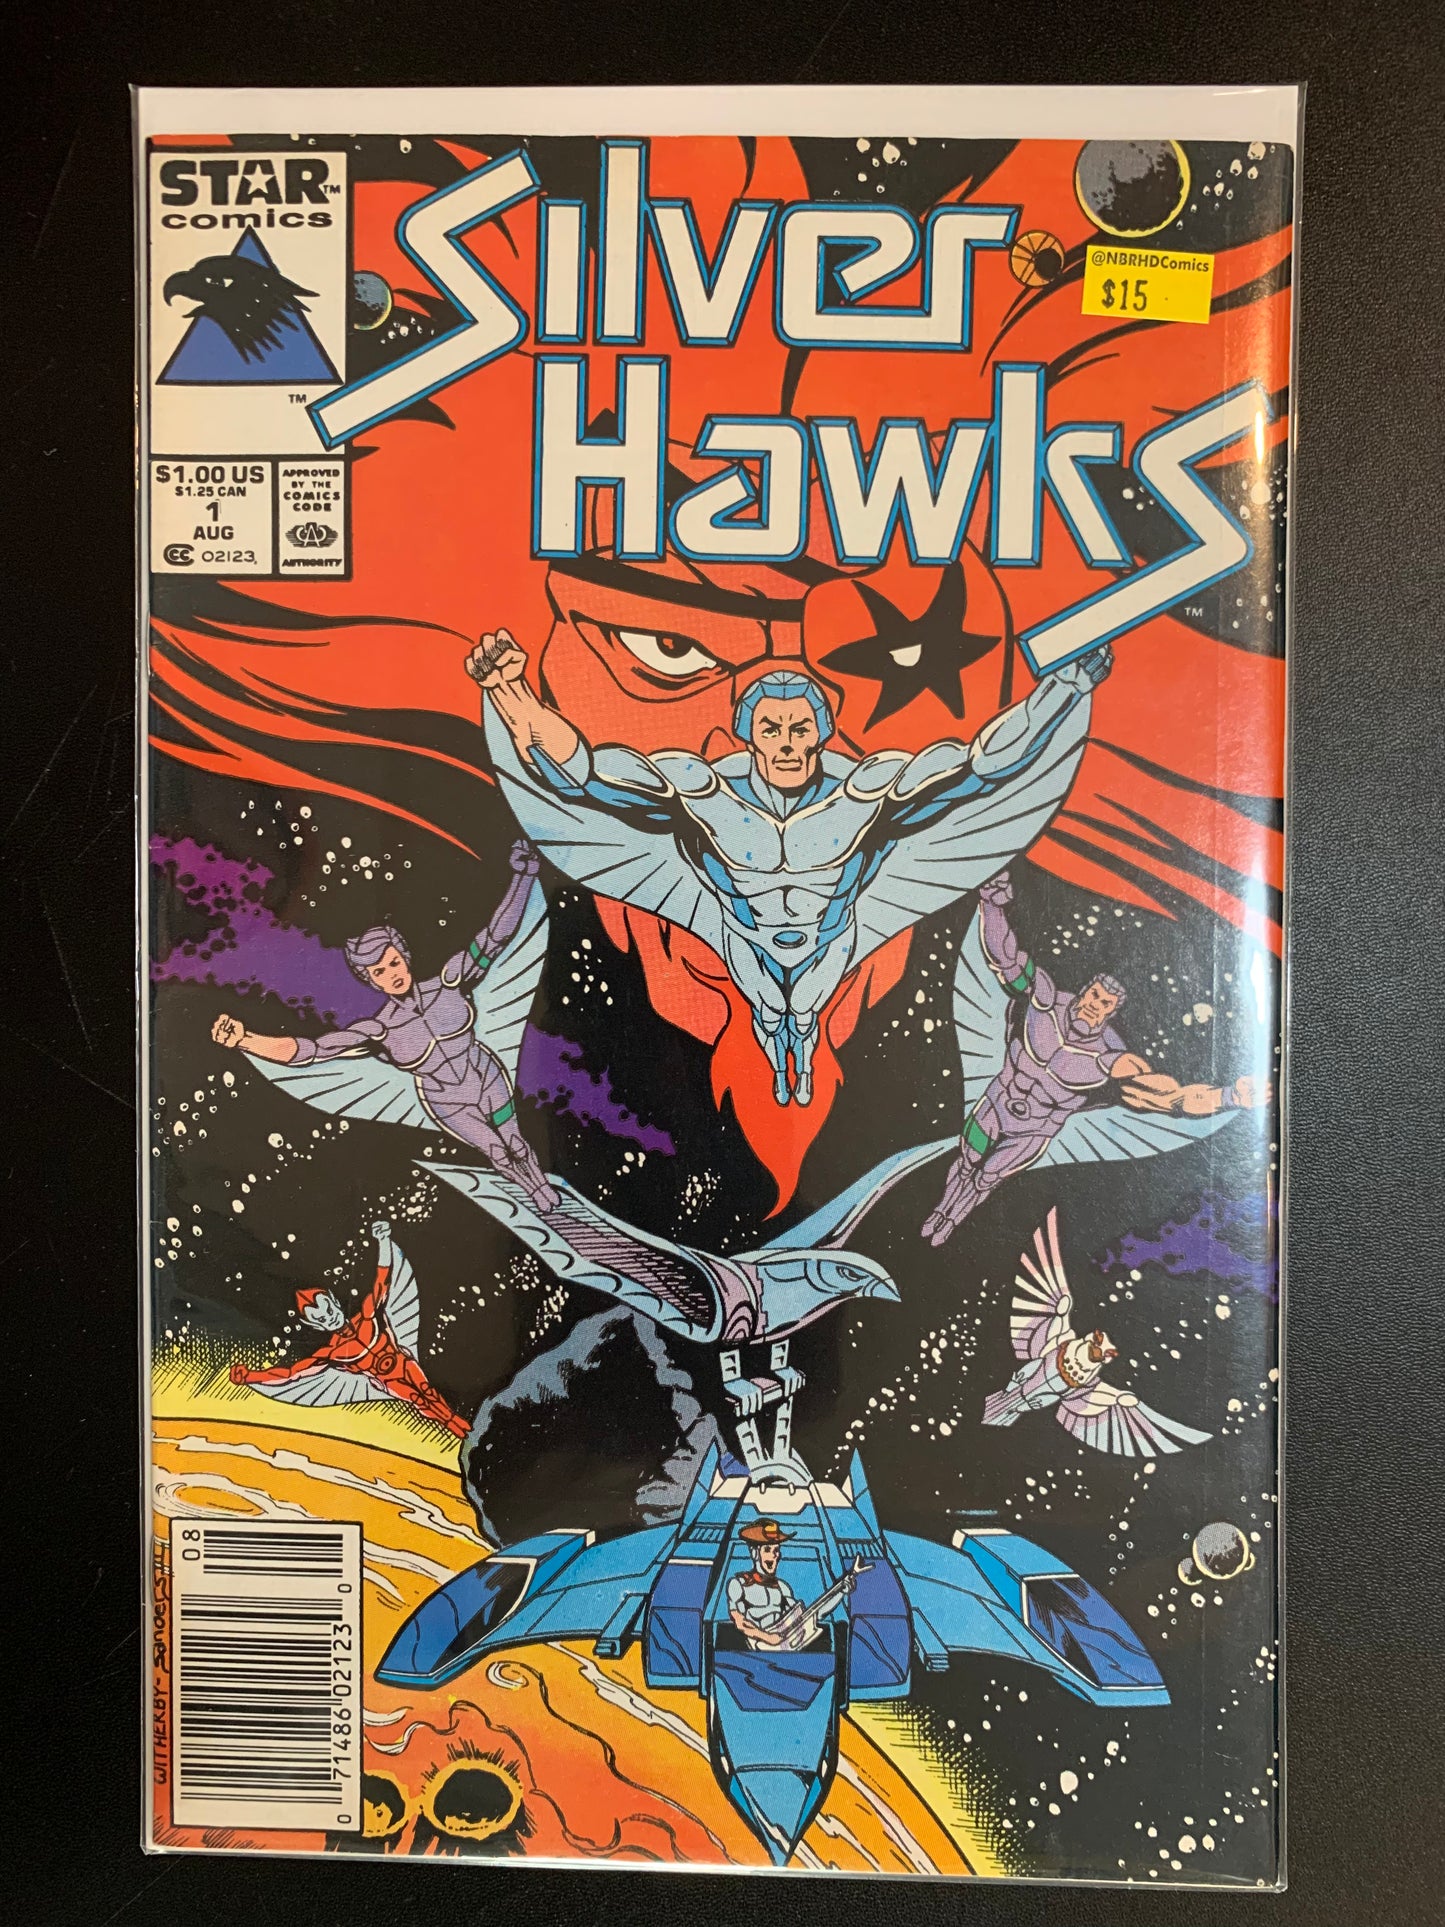 Silver hawks #1